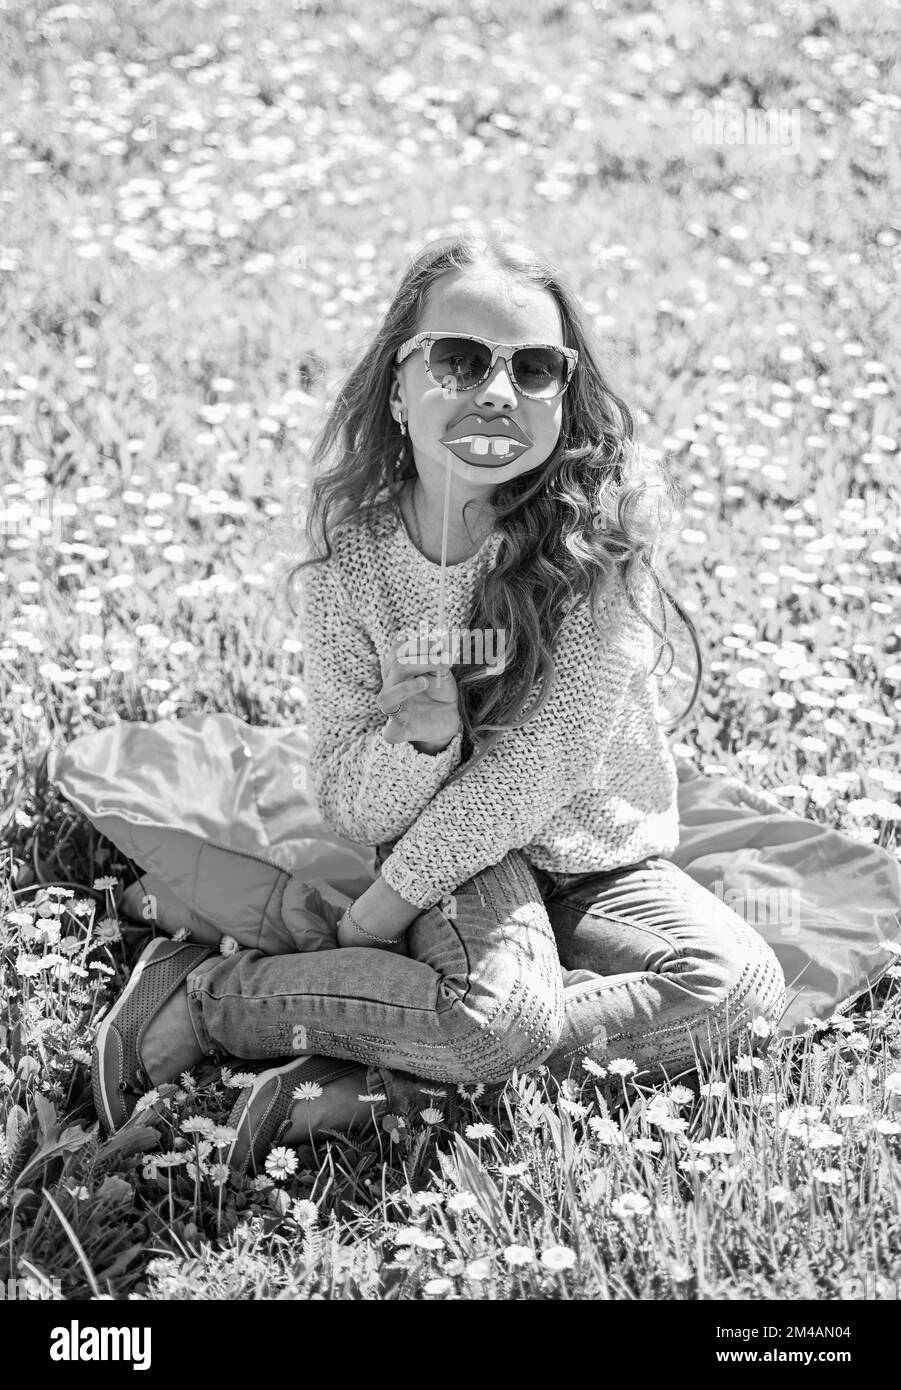 Das Mädchen sitzt auf Gras am Grassplot, grüner Hintergrund. Kinder, die mit Brillen posieren, lächelnde Lippen aus Pappe für eine Fotosession auf der Wiese. Humor-Konzept Stockfoto